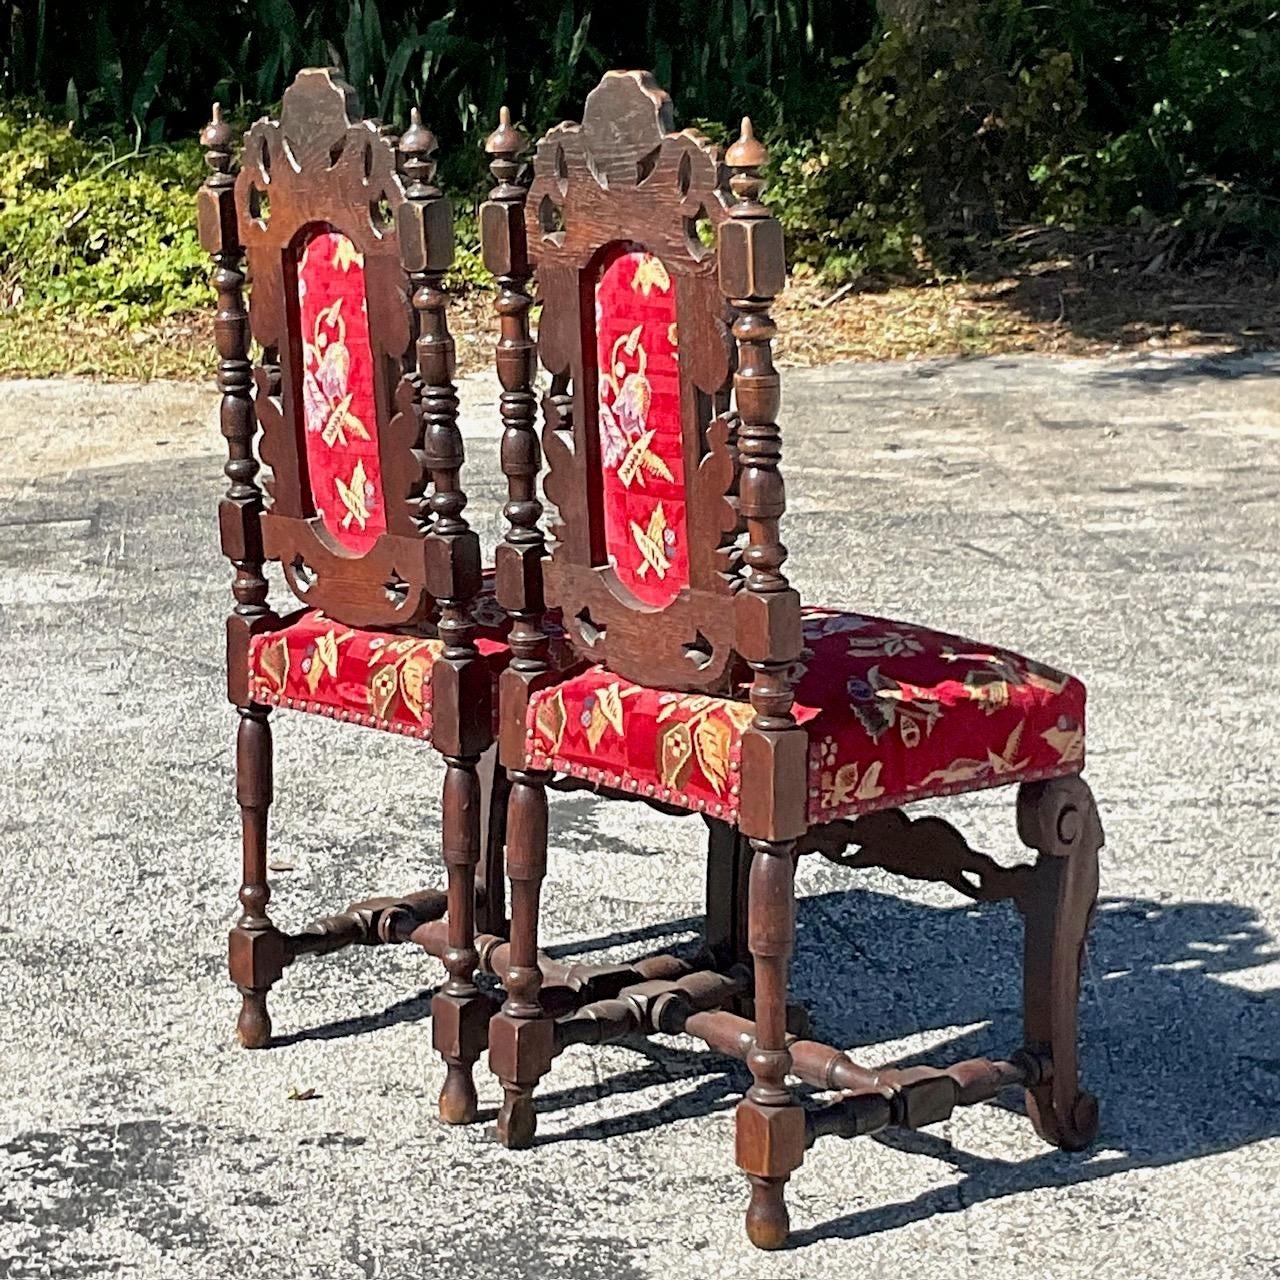 Une superbe paire de chaises de salle à manger gothiques vintage. Magnifique détail sculpté à la main dans une forme gothique classique. Une tapisserie florale rouge brillante en très bon état. Acquis d'une propriété de Palm Beach.